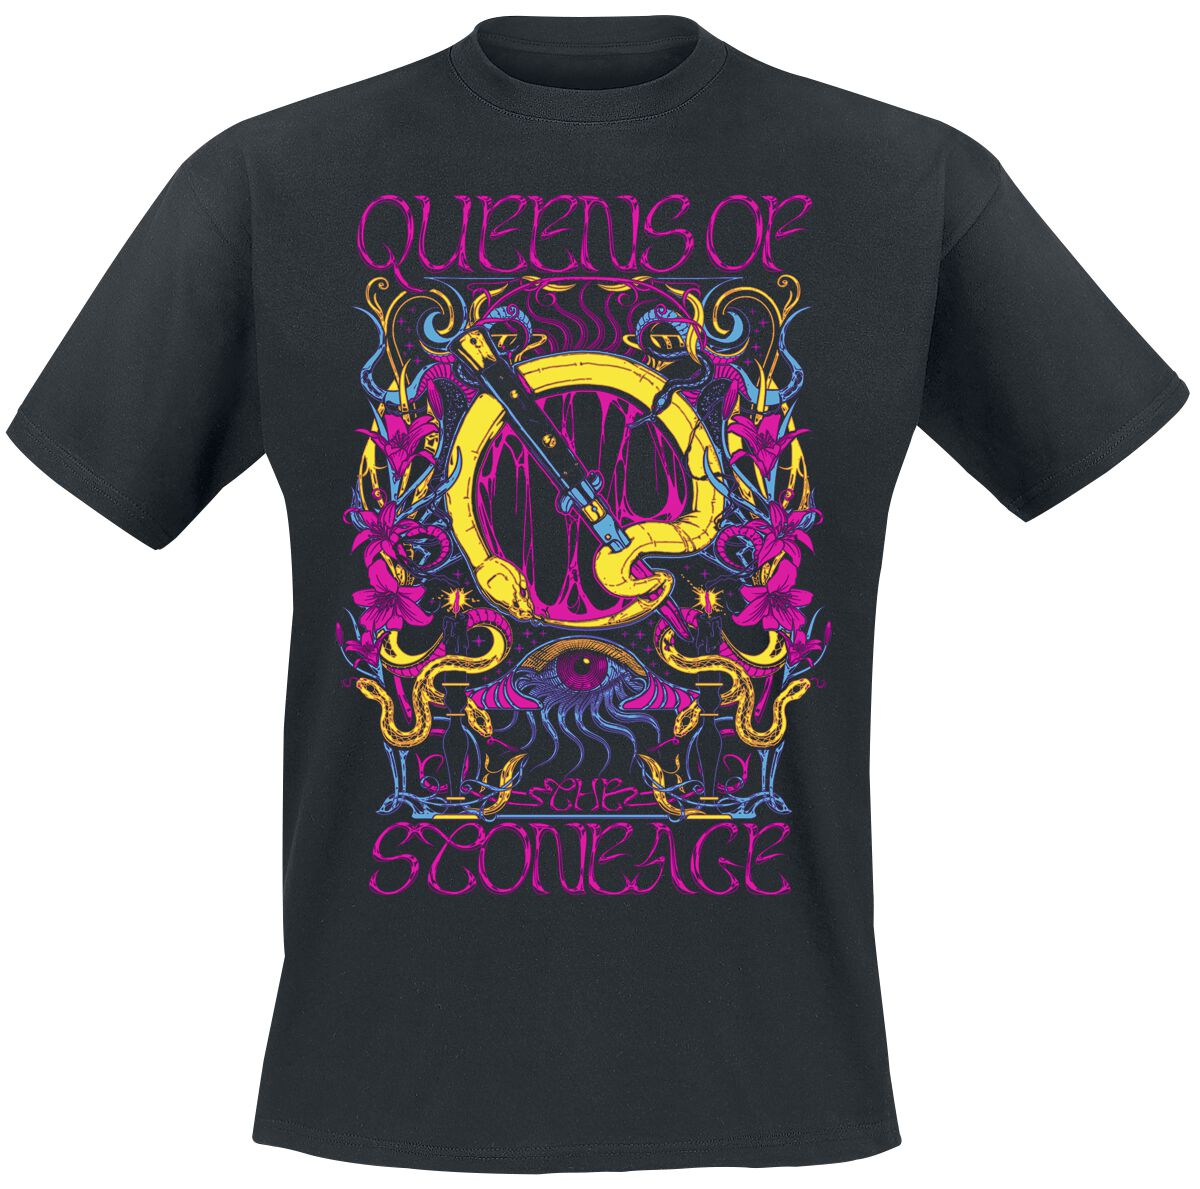 Queens Of The Stone Age T-Shirt - In Times New Roman - Neon Sacrilege - S bis 3XL - für Männer - Größe S - schwarz  - Lizenziertes Merchandise! von Queens Of The Stone Age